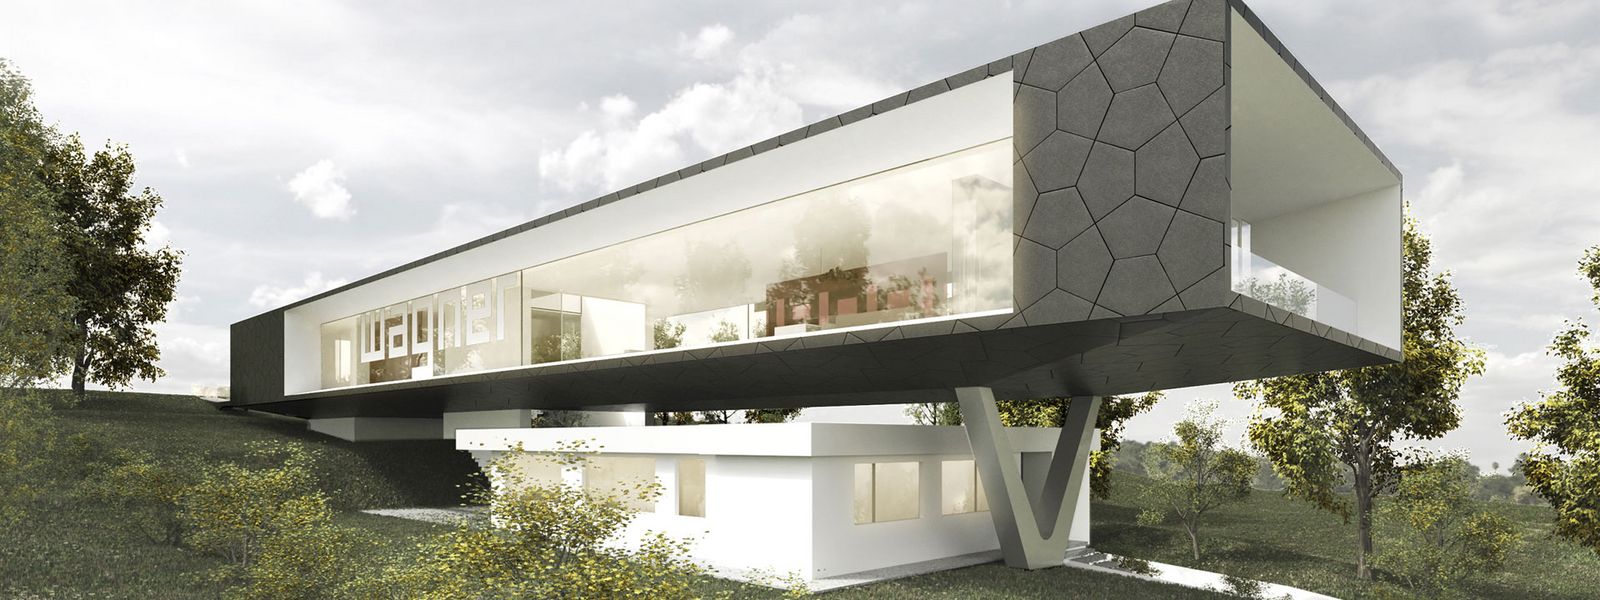 Arcitectural design of Wagner Design Lab ©Titus Bernhard Architekten